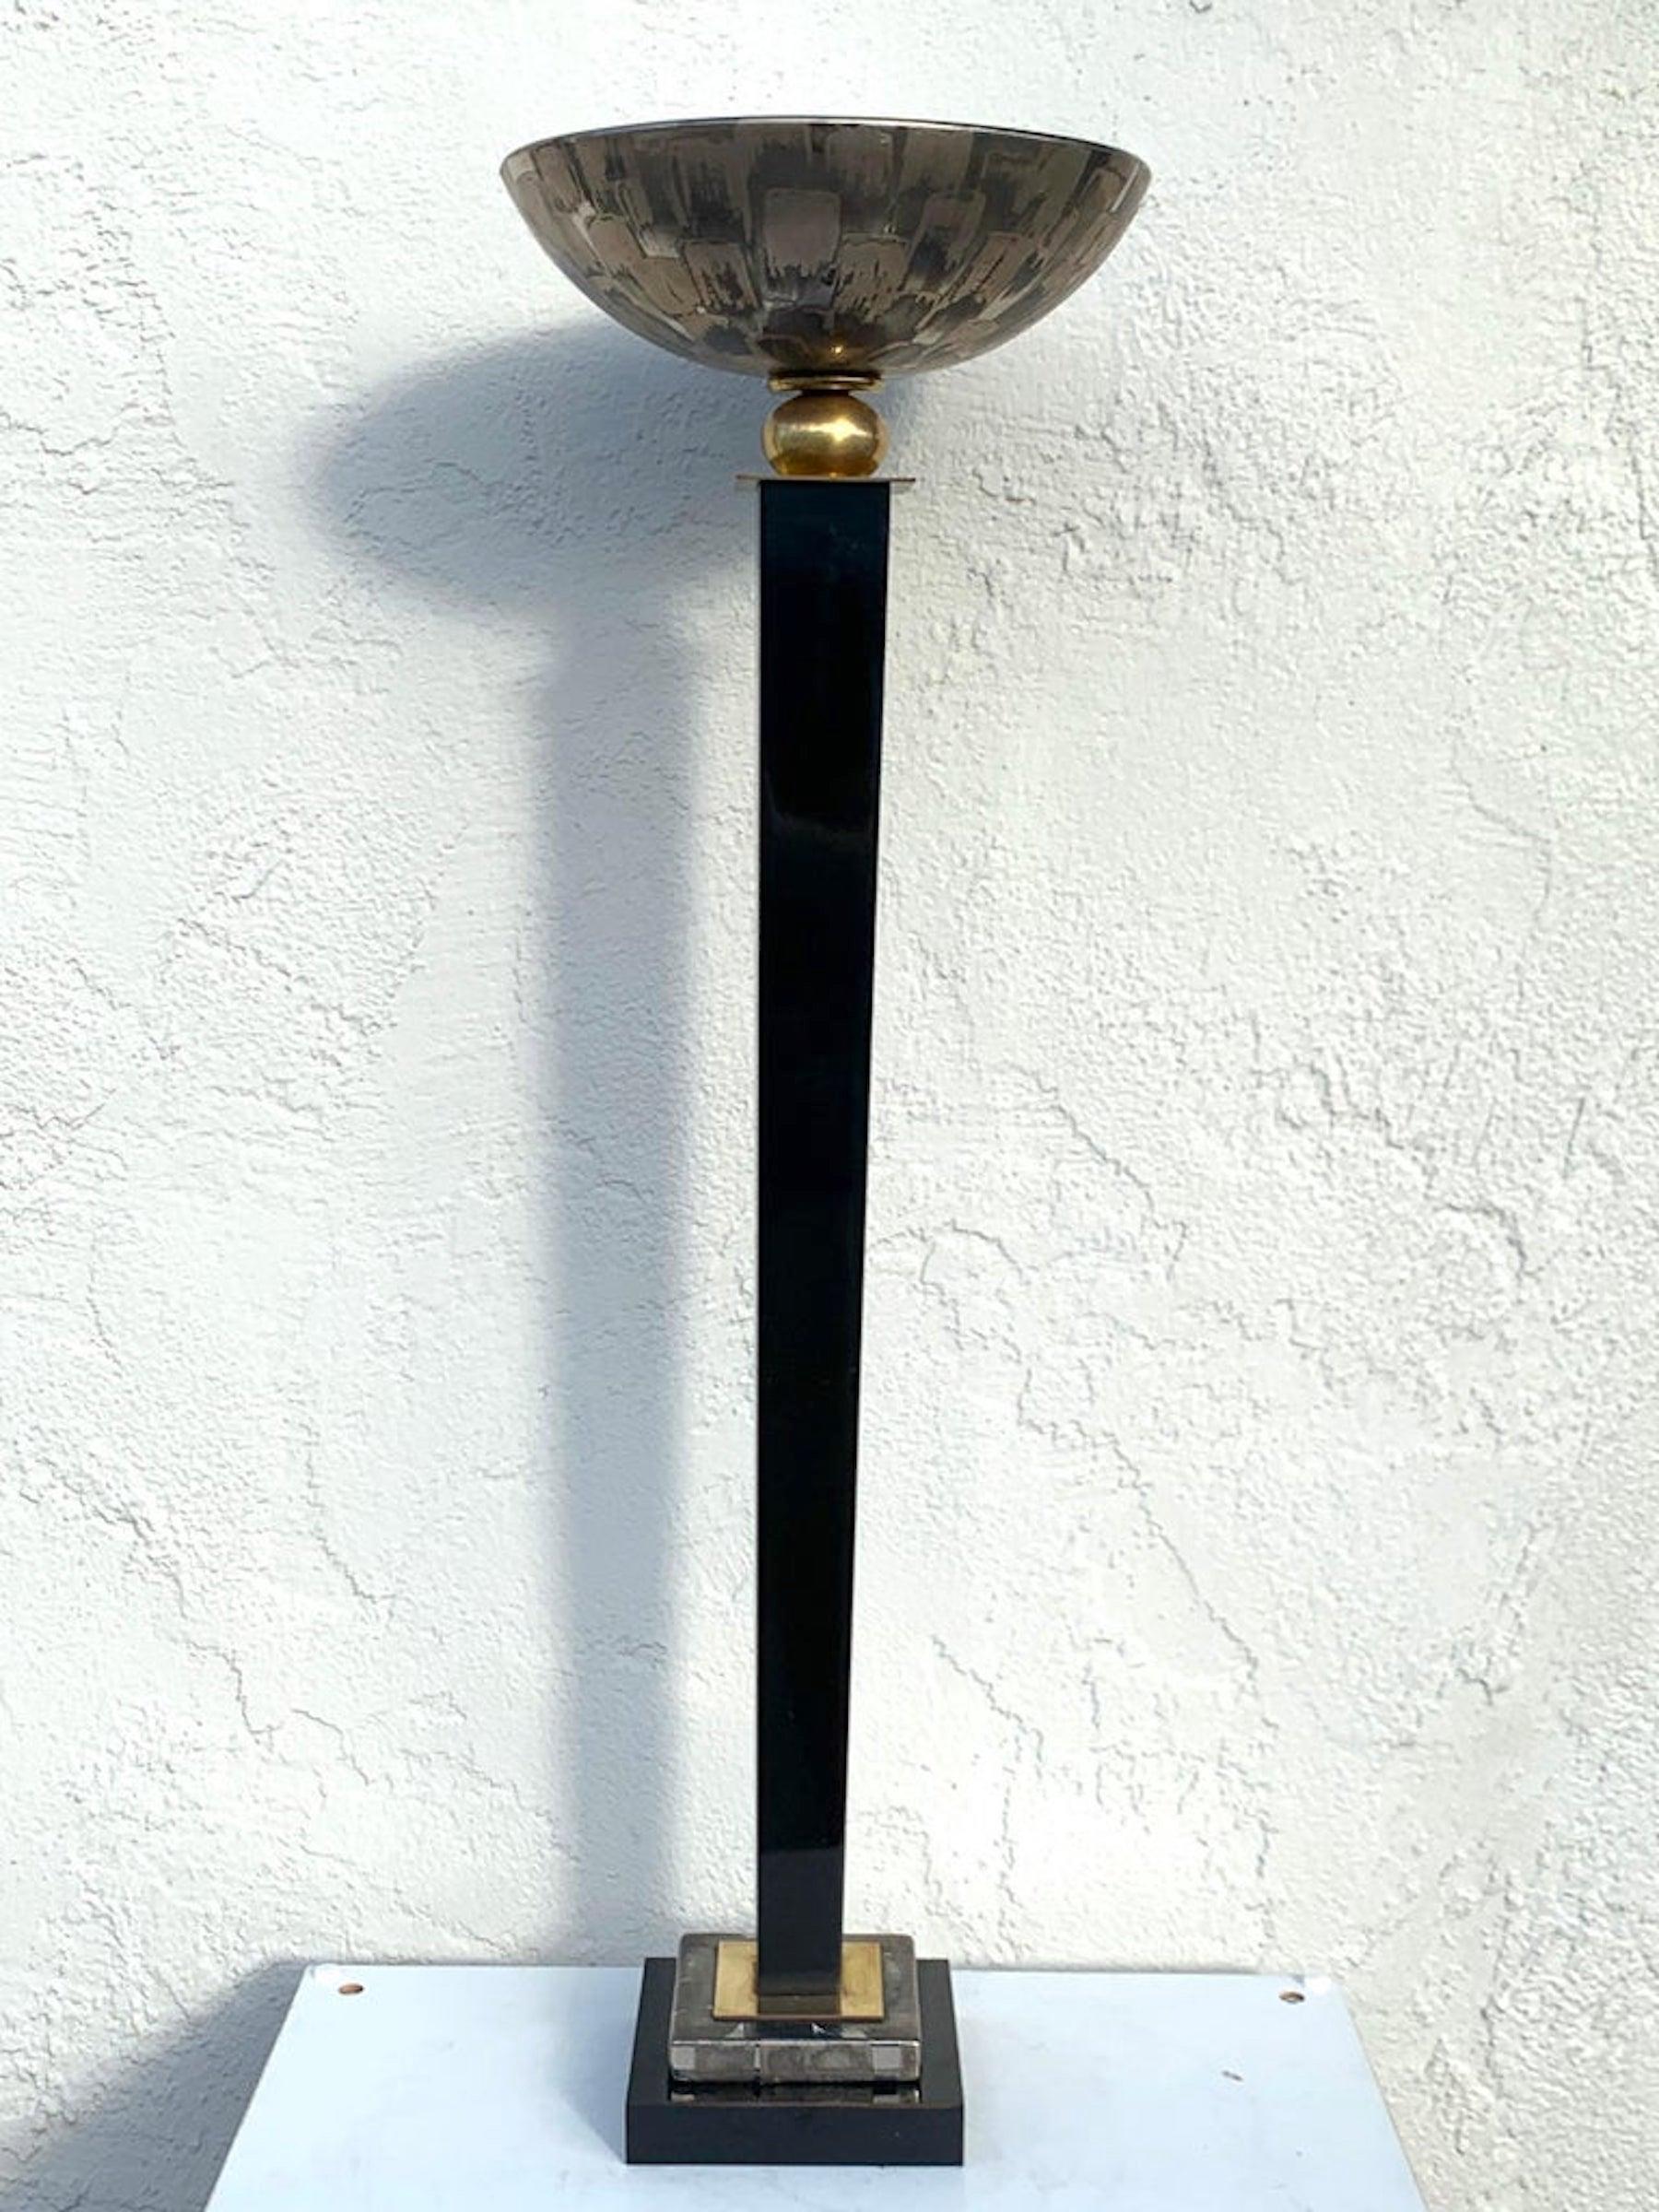 Lampe torchère de table du milieu du siècle, attribuée à Mangani, avec un abat-jour en porcelaine lustrée argentée de 11,5 po de diamètre, reposant sur un piédestal carré de 6 po en laiton laqué et lustré argenté.
Nouveau câblage avec variateurs.